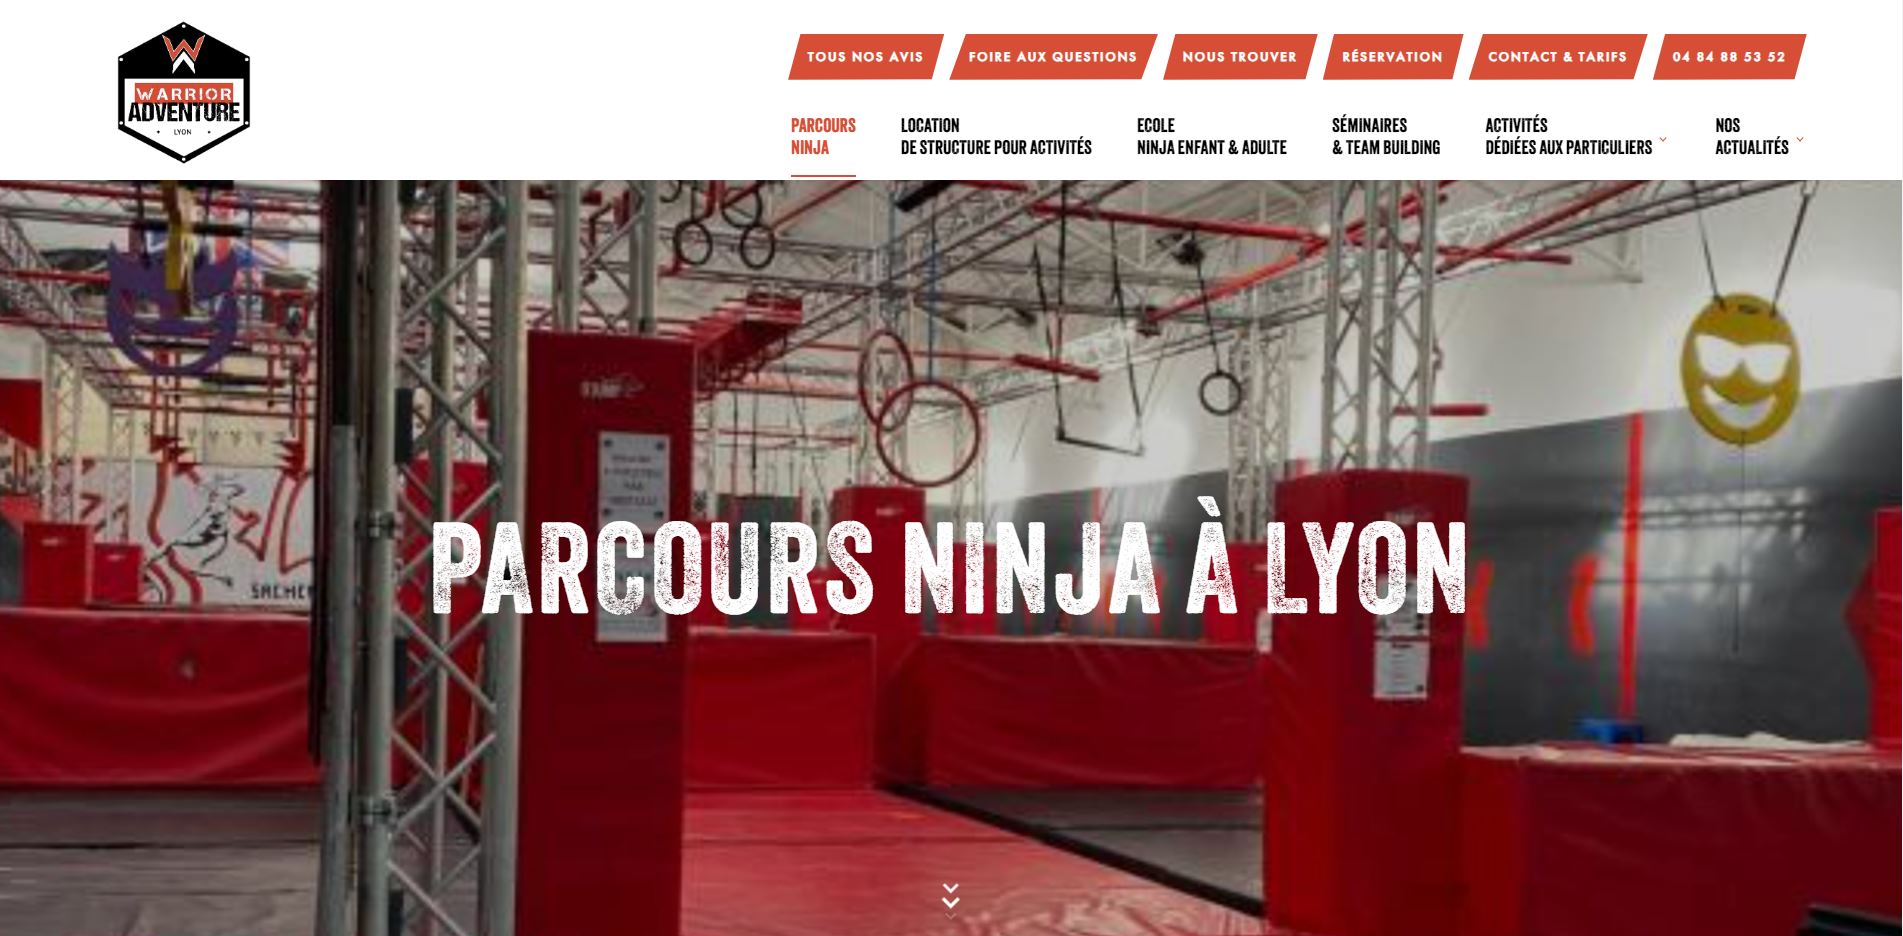 Création d’un site web pour Warrior Adventure, salle de parcours Ninja Warrior à Lyon 